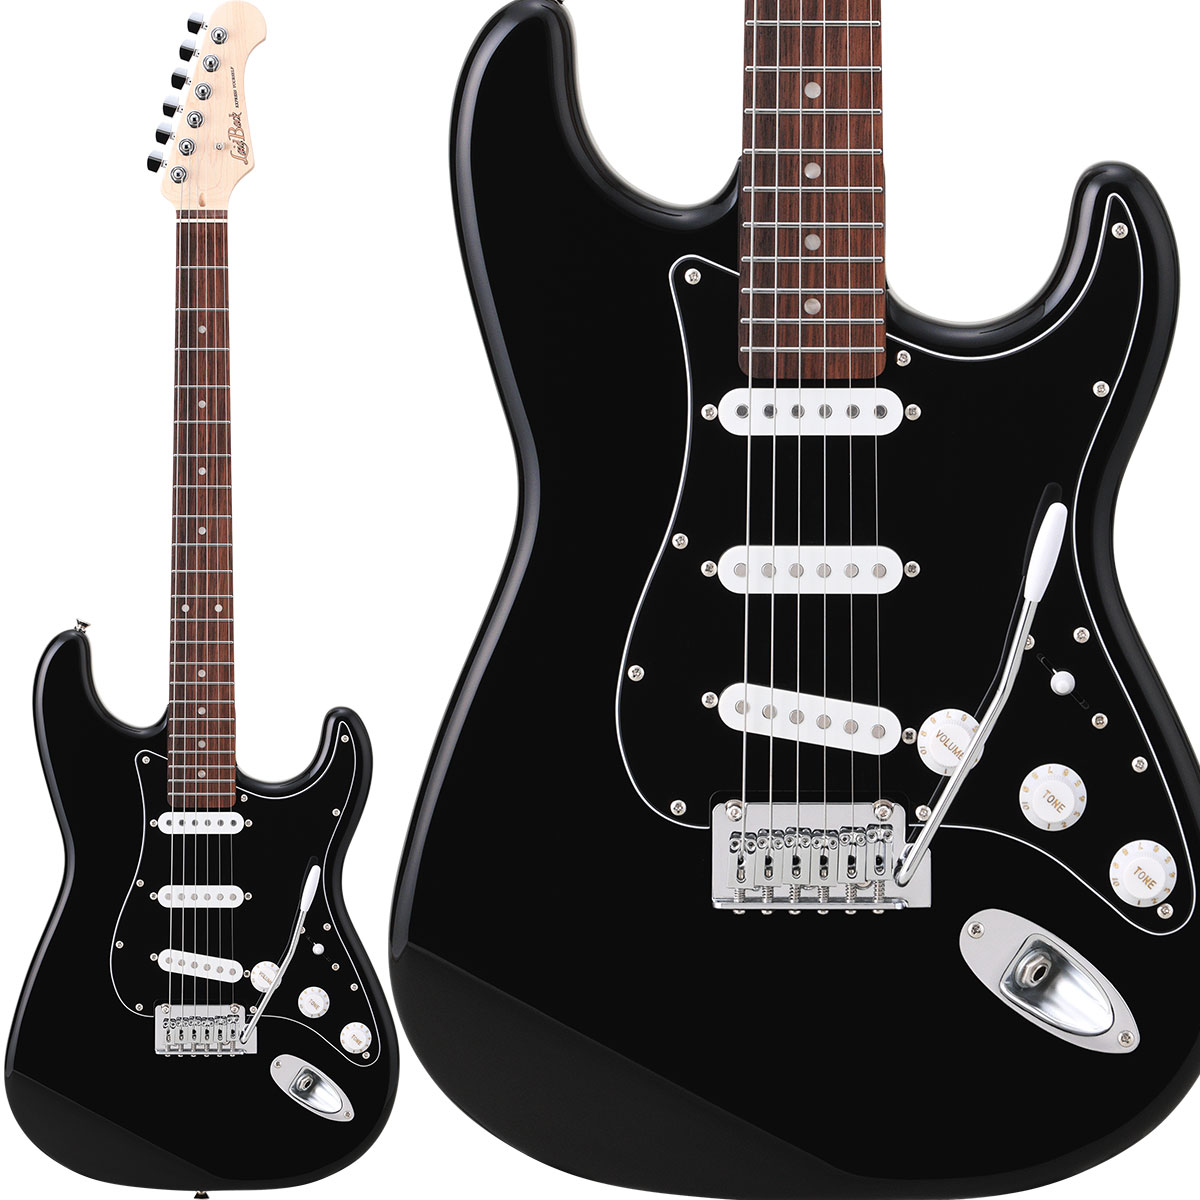 LaidBackLST-5-R-3S Vintage Black エレキギター ストラトタイプ ハムバッカー切替可能 アルダーボディ ブラック 黒 レイドバック